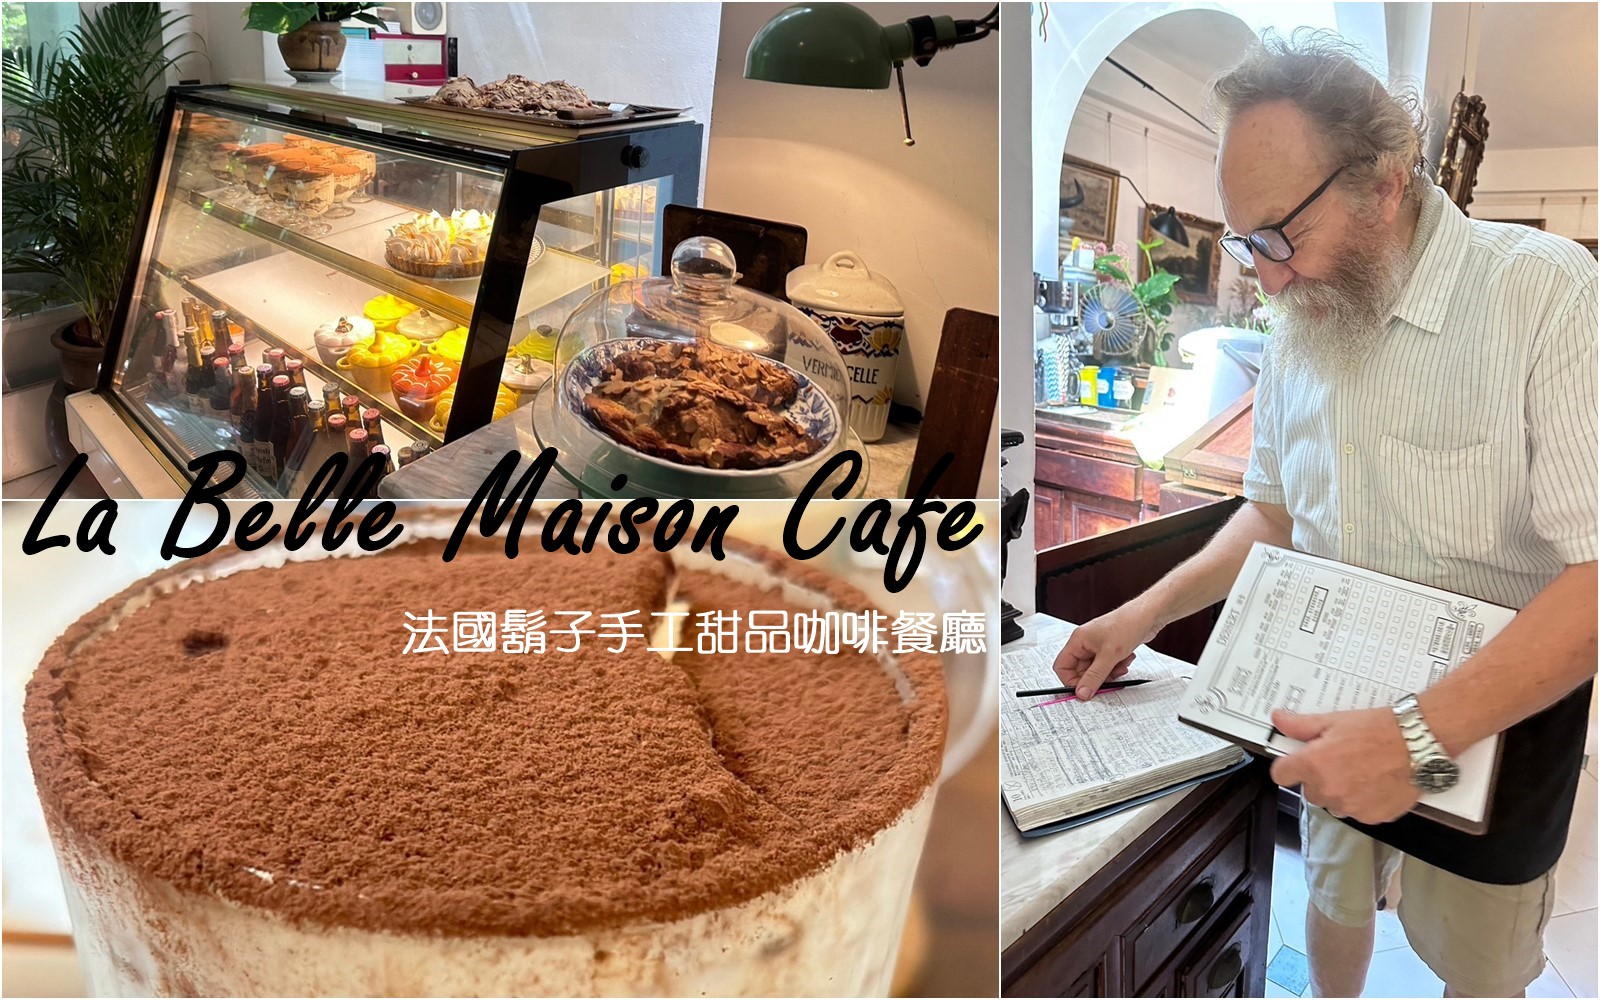 台南 La Belle Maison Cafe 法國鬍子手工甜品咖啡餐廳 巷仔內甜點